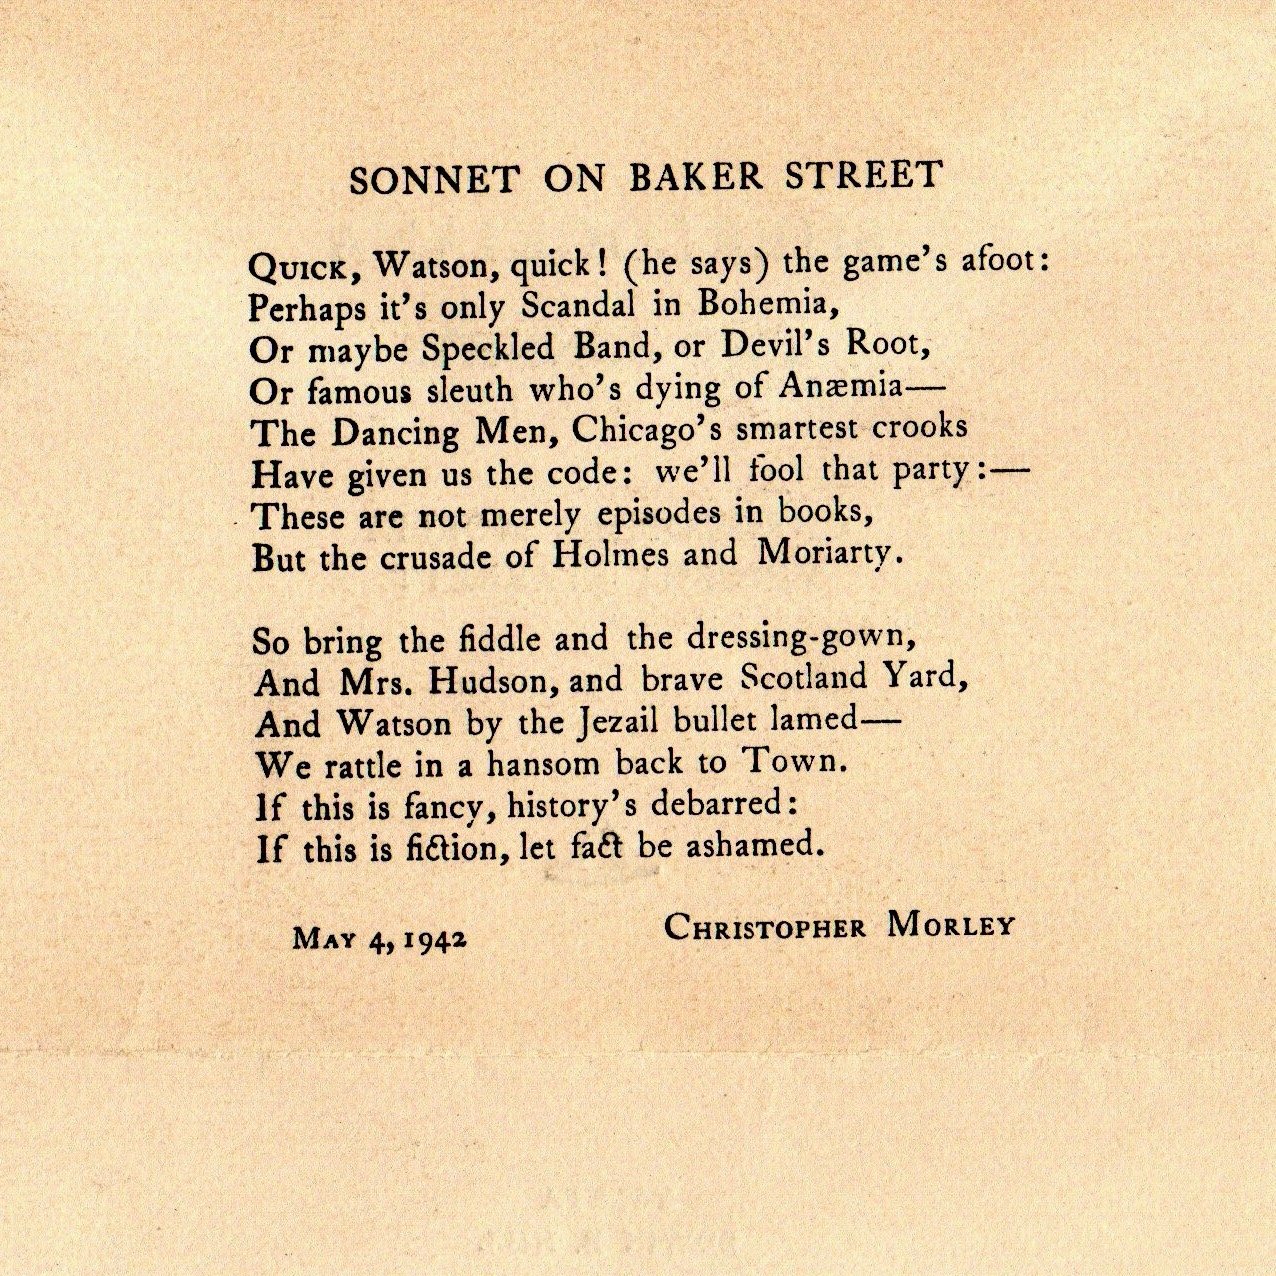 Morley's Sonnet